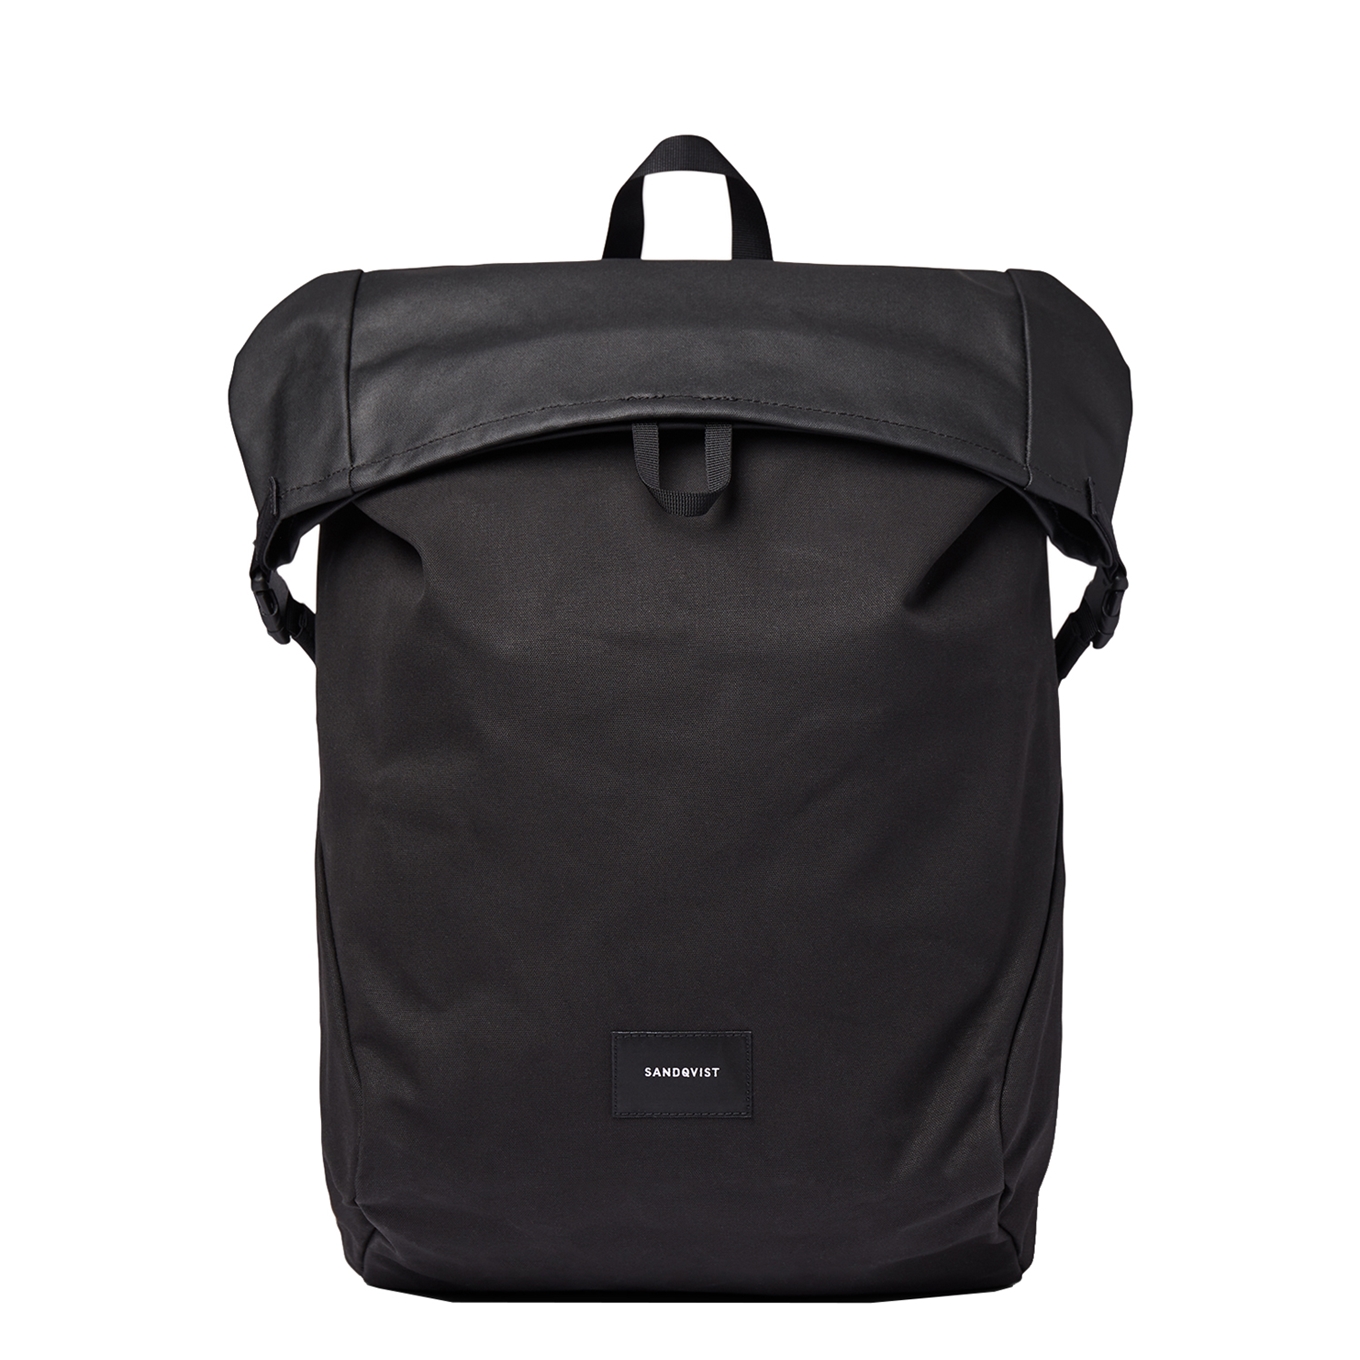 Sandqvist Alfred Backpack black with black webbing backpack